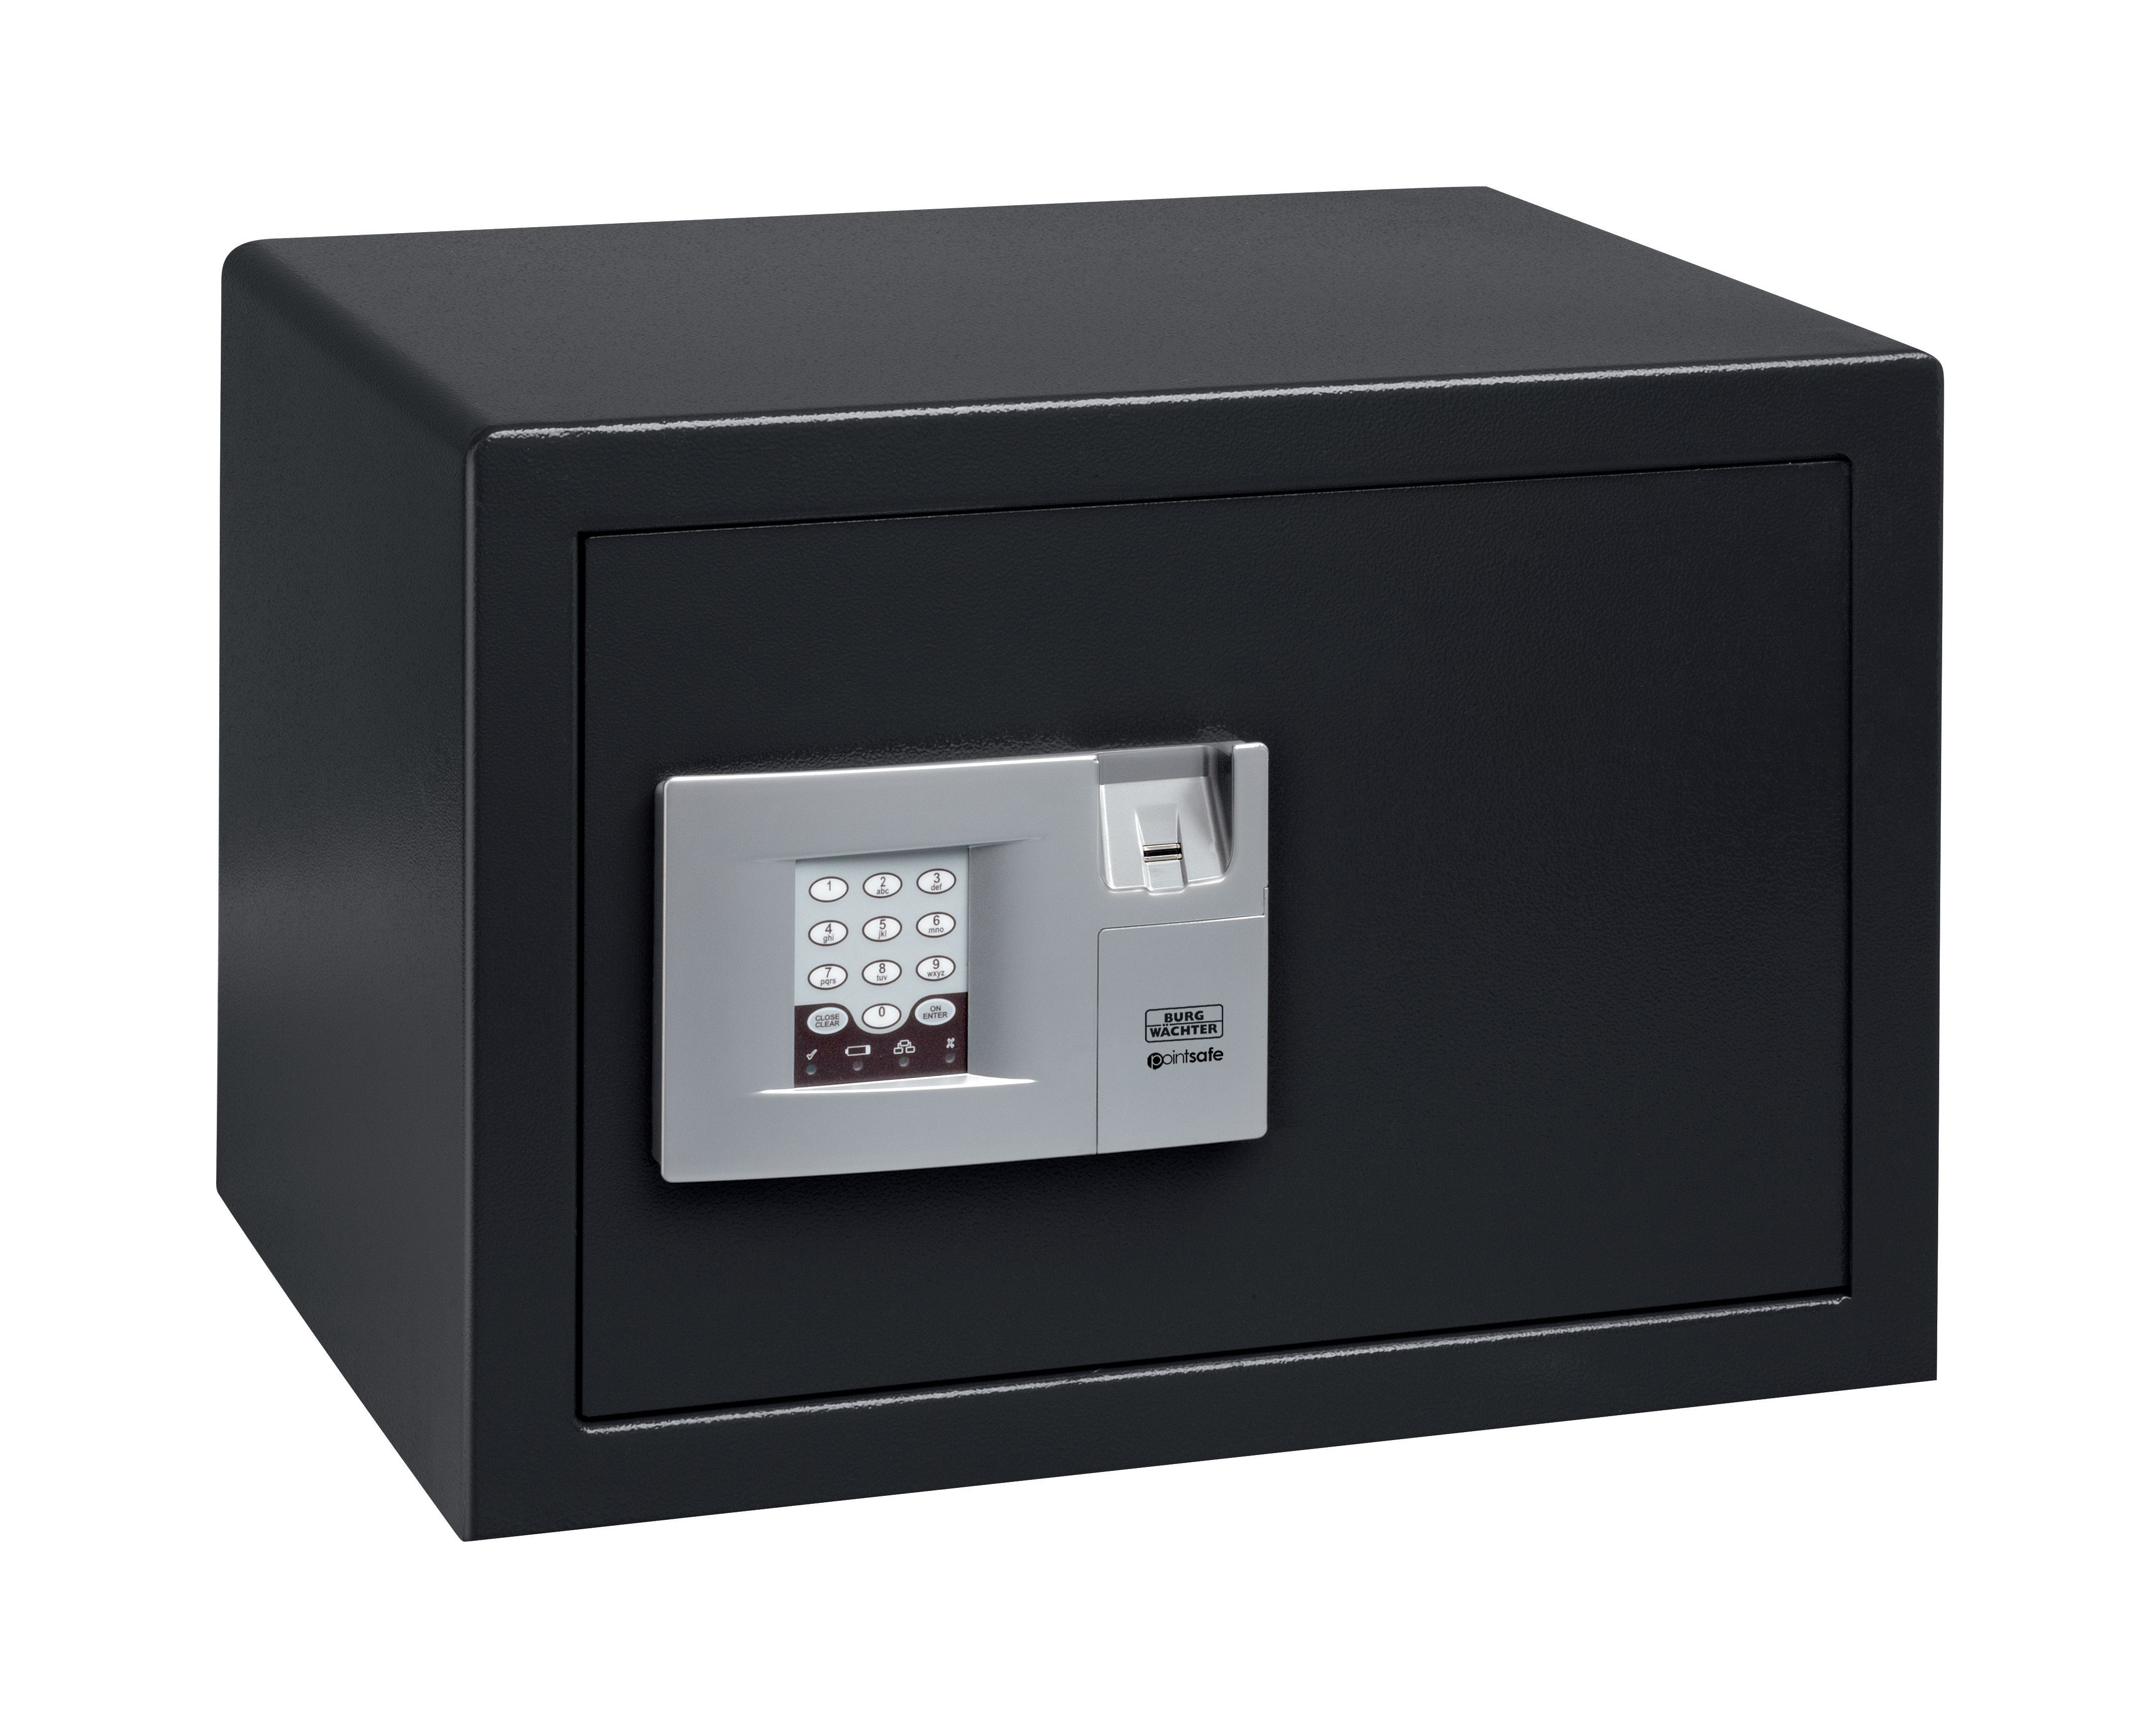 Burg-Wachter Black Pointsafe Electronic Home Safe with Fingerscan - 38.8L